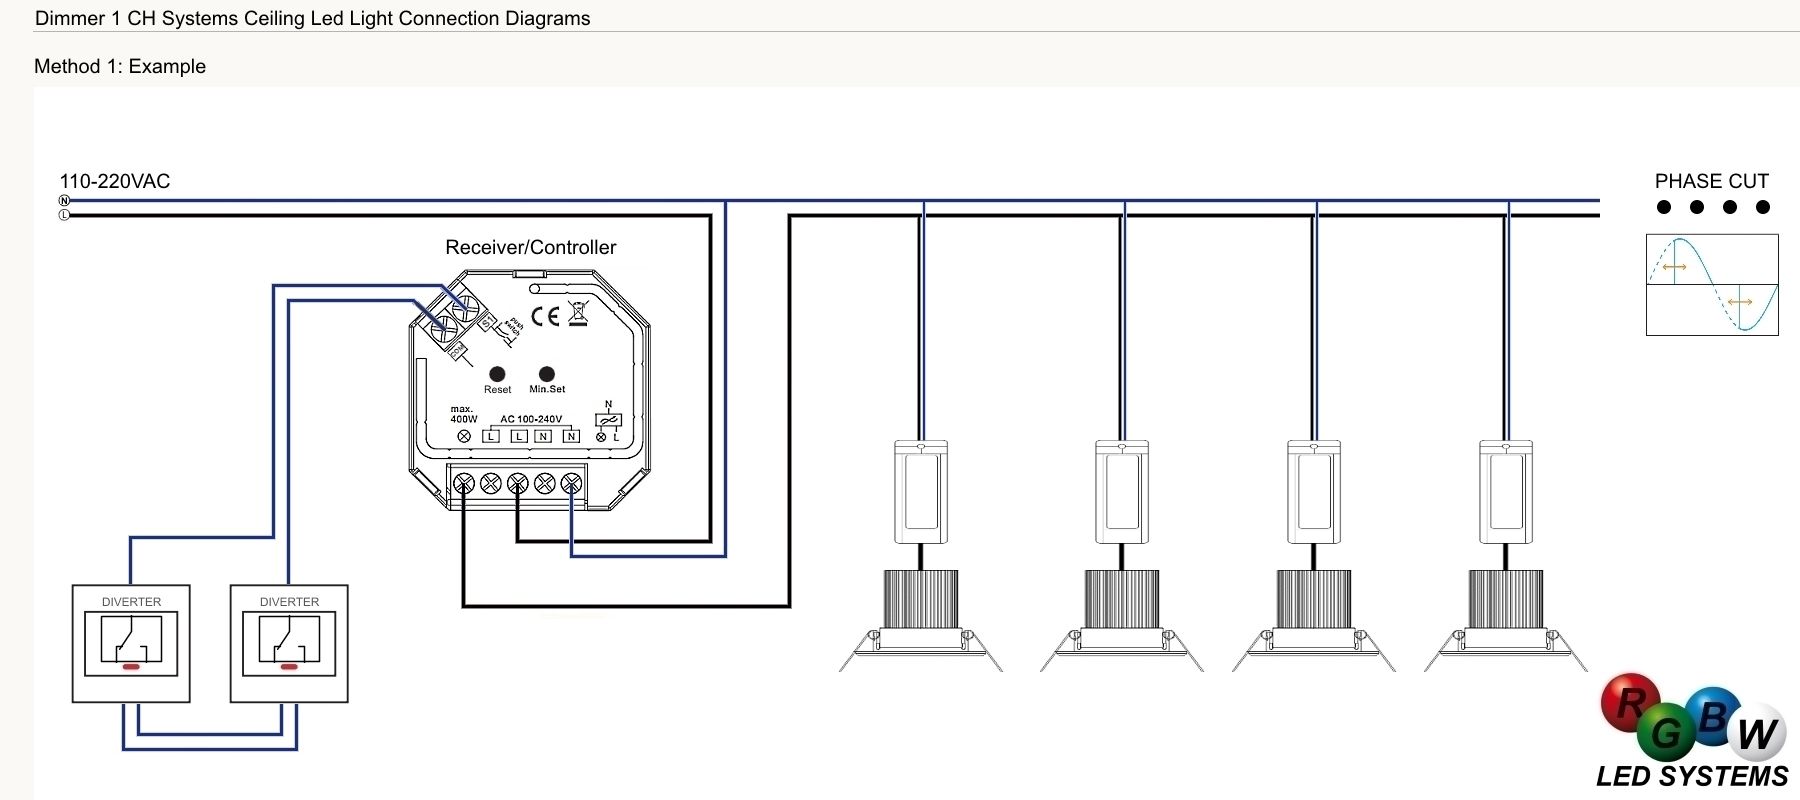  photo schema elettrico collegamento dimmer regolazione luminositagrave lampadine faretti led dimmerabili pulsante bticino vimar si_zpsdcuryxiz.jpg